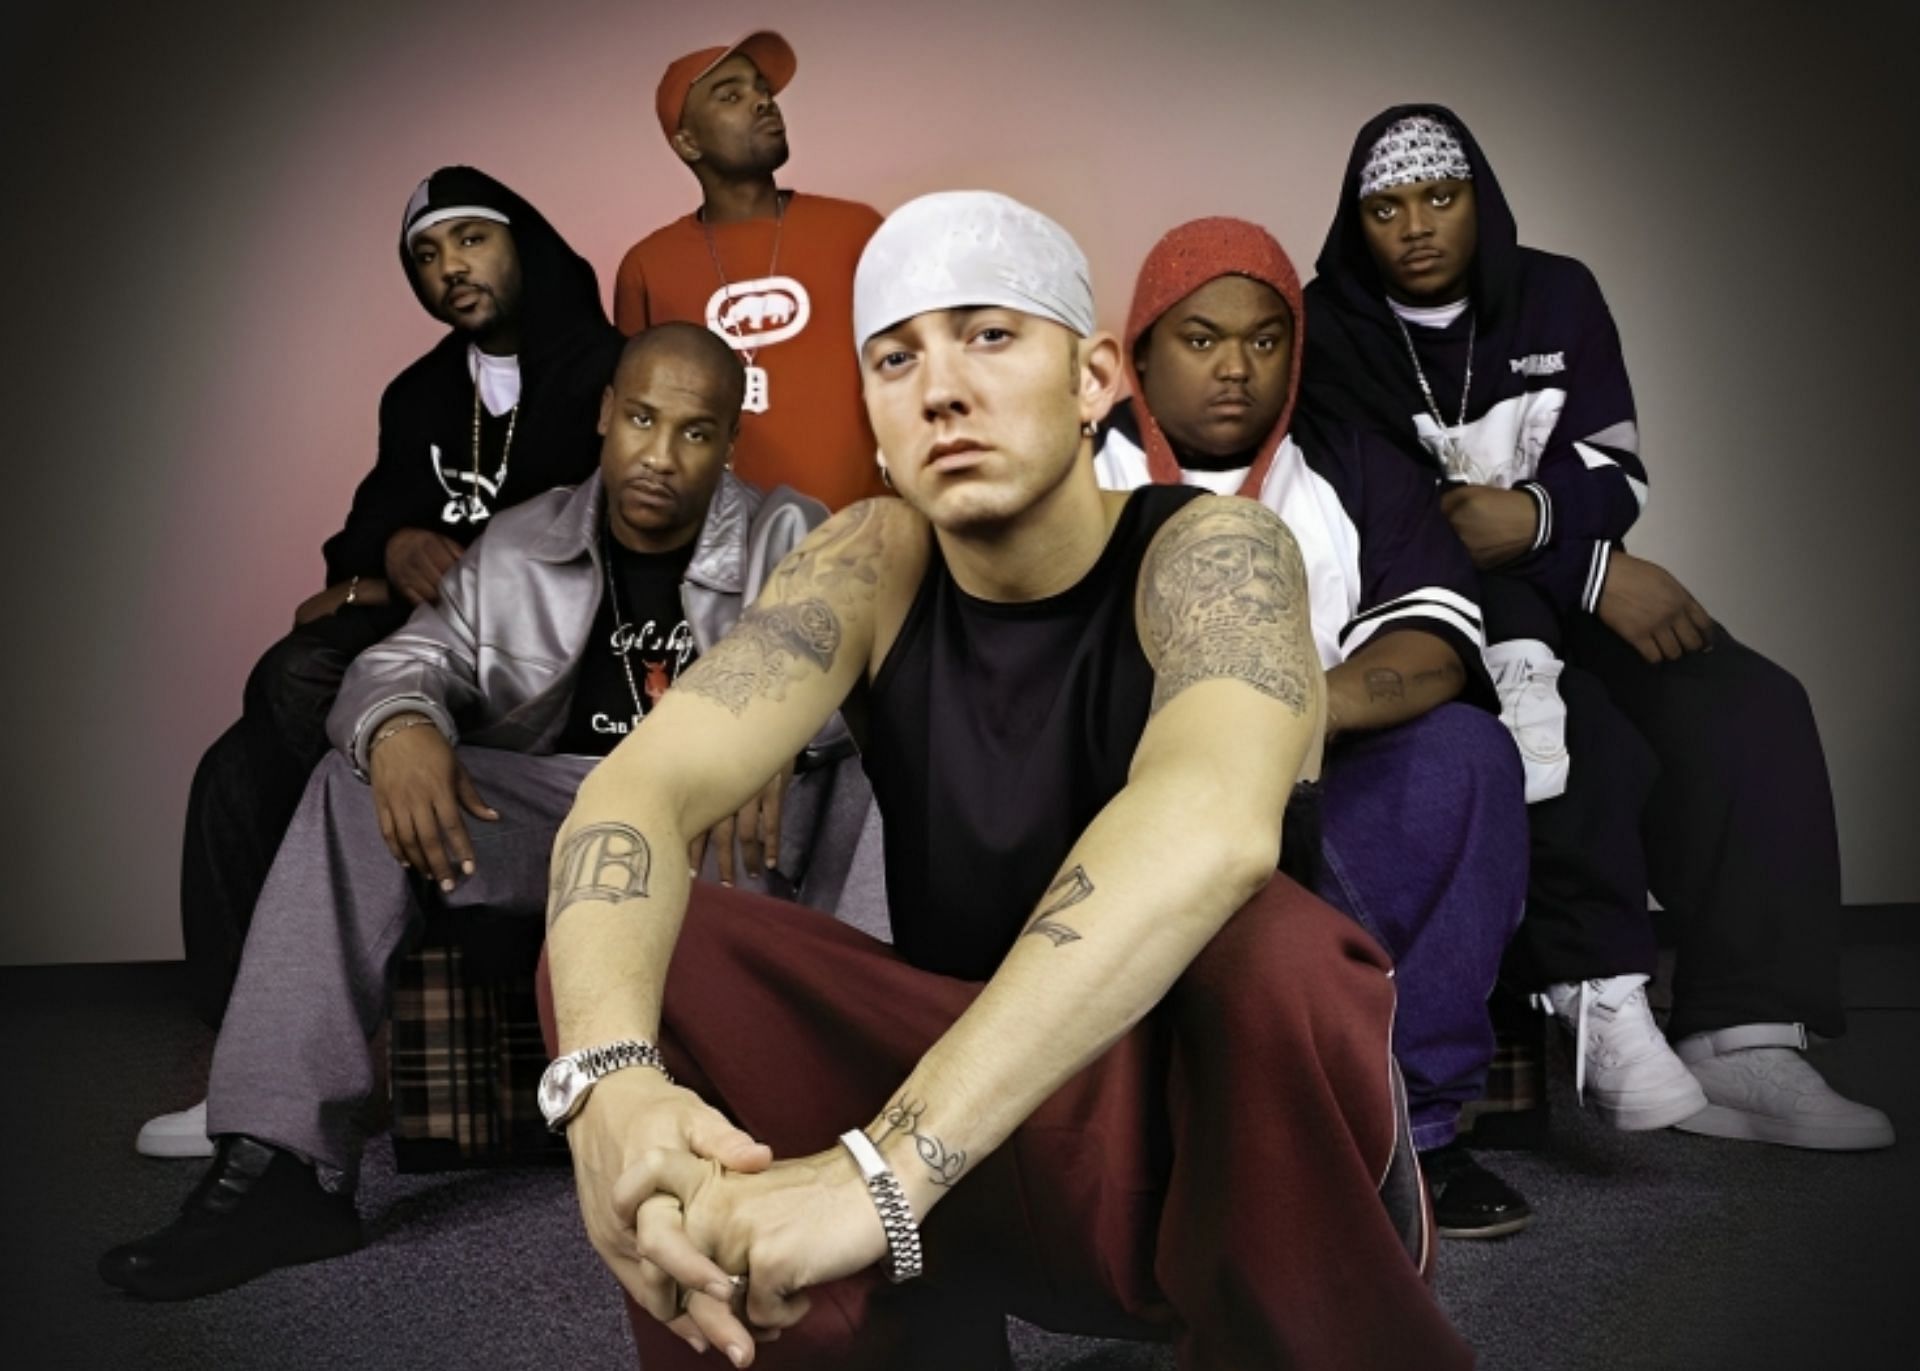 Группа d 12. Группа Eminem d-12. РЭПЕРЫ D 12. Группа д 12 Эминем. D12 Eminem.